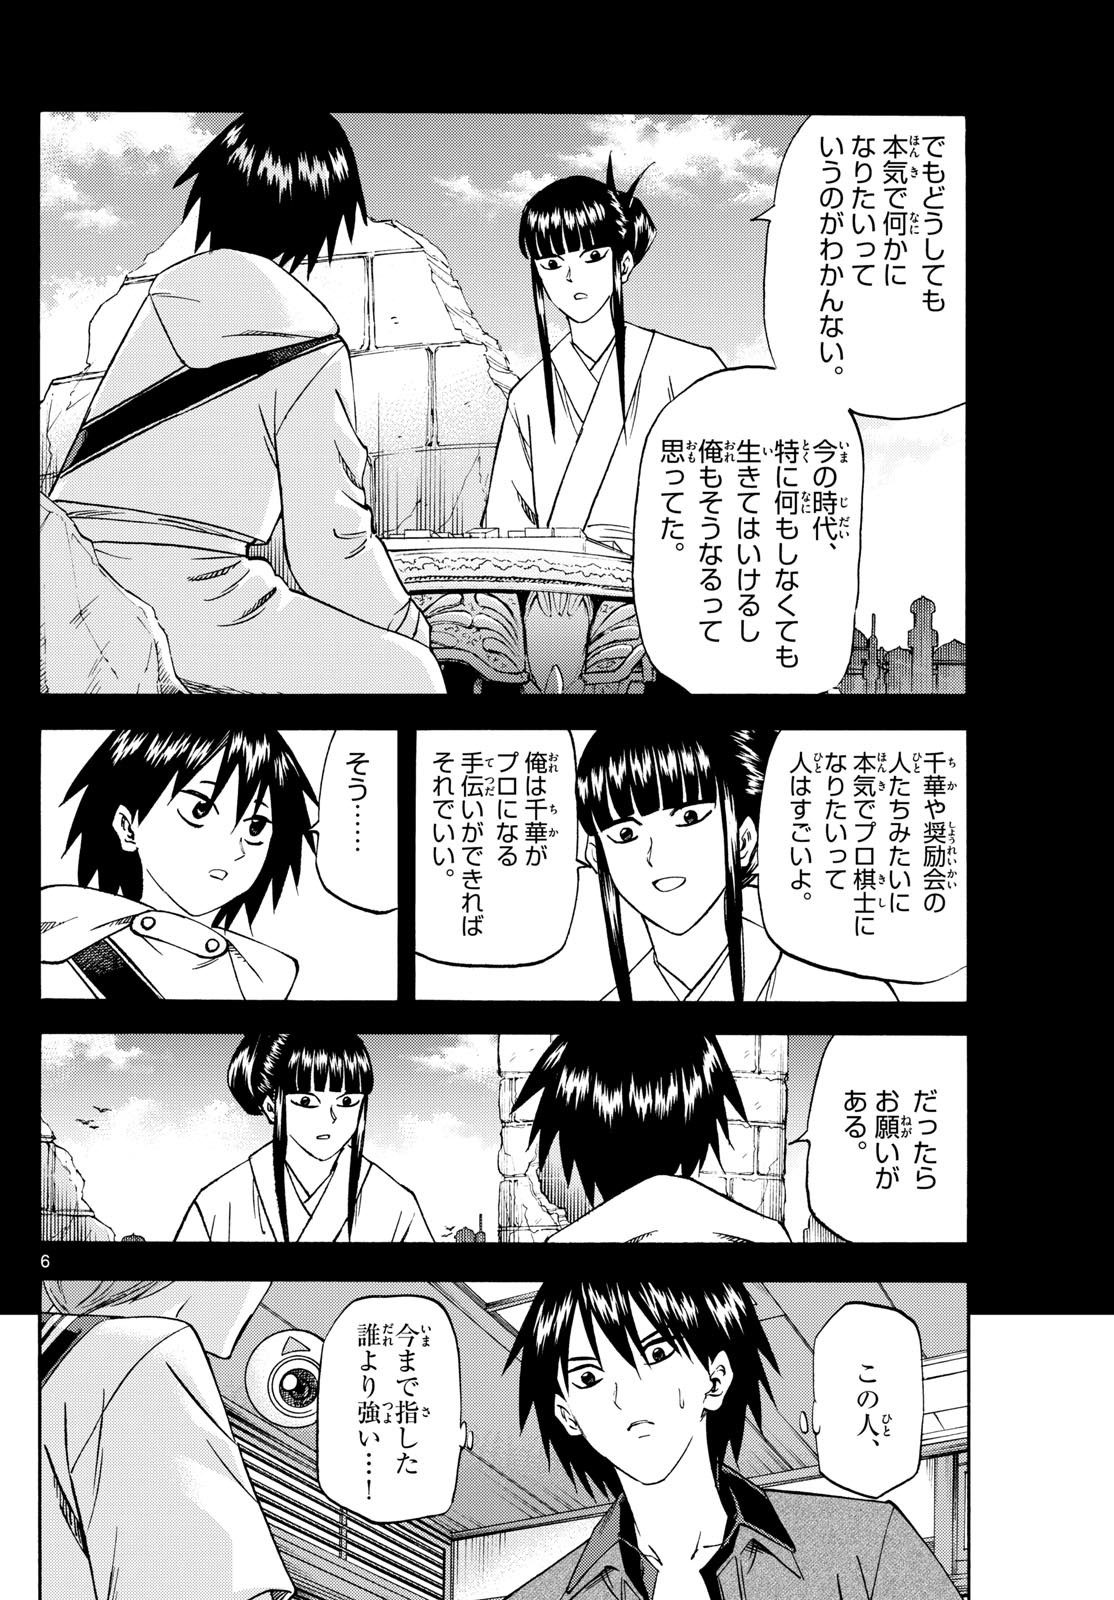 Ryu-to-Ichigo - Chapter 194 - Page 6